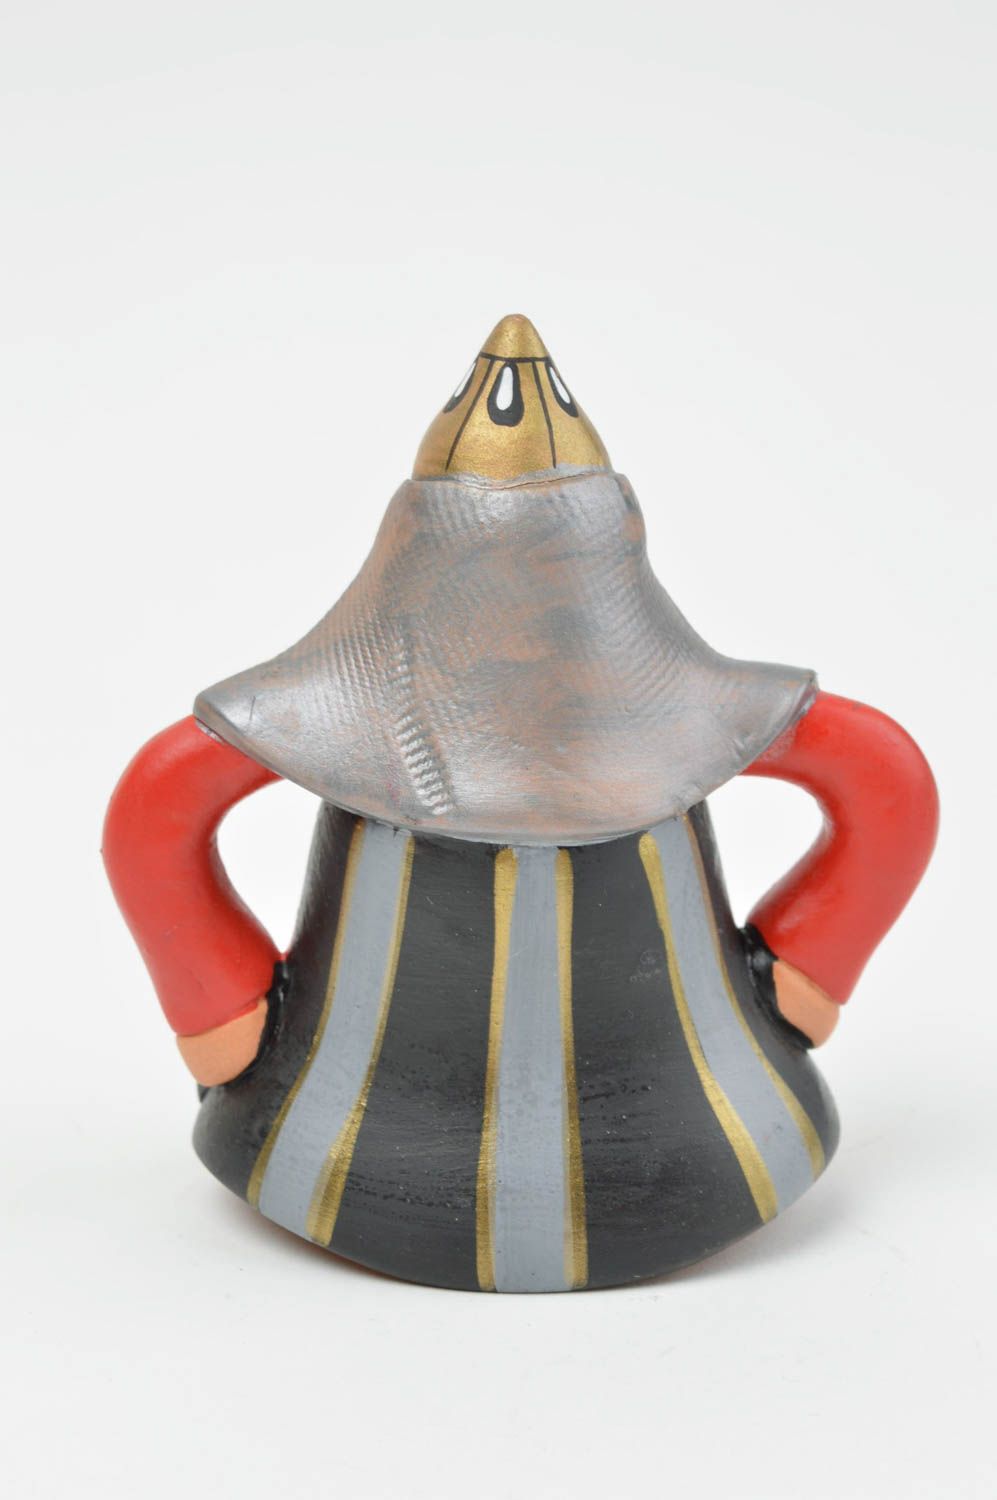 Глиняный колокольчик в виде рыцаря расписанный красками ручной работы необычный фото 3